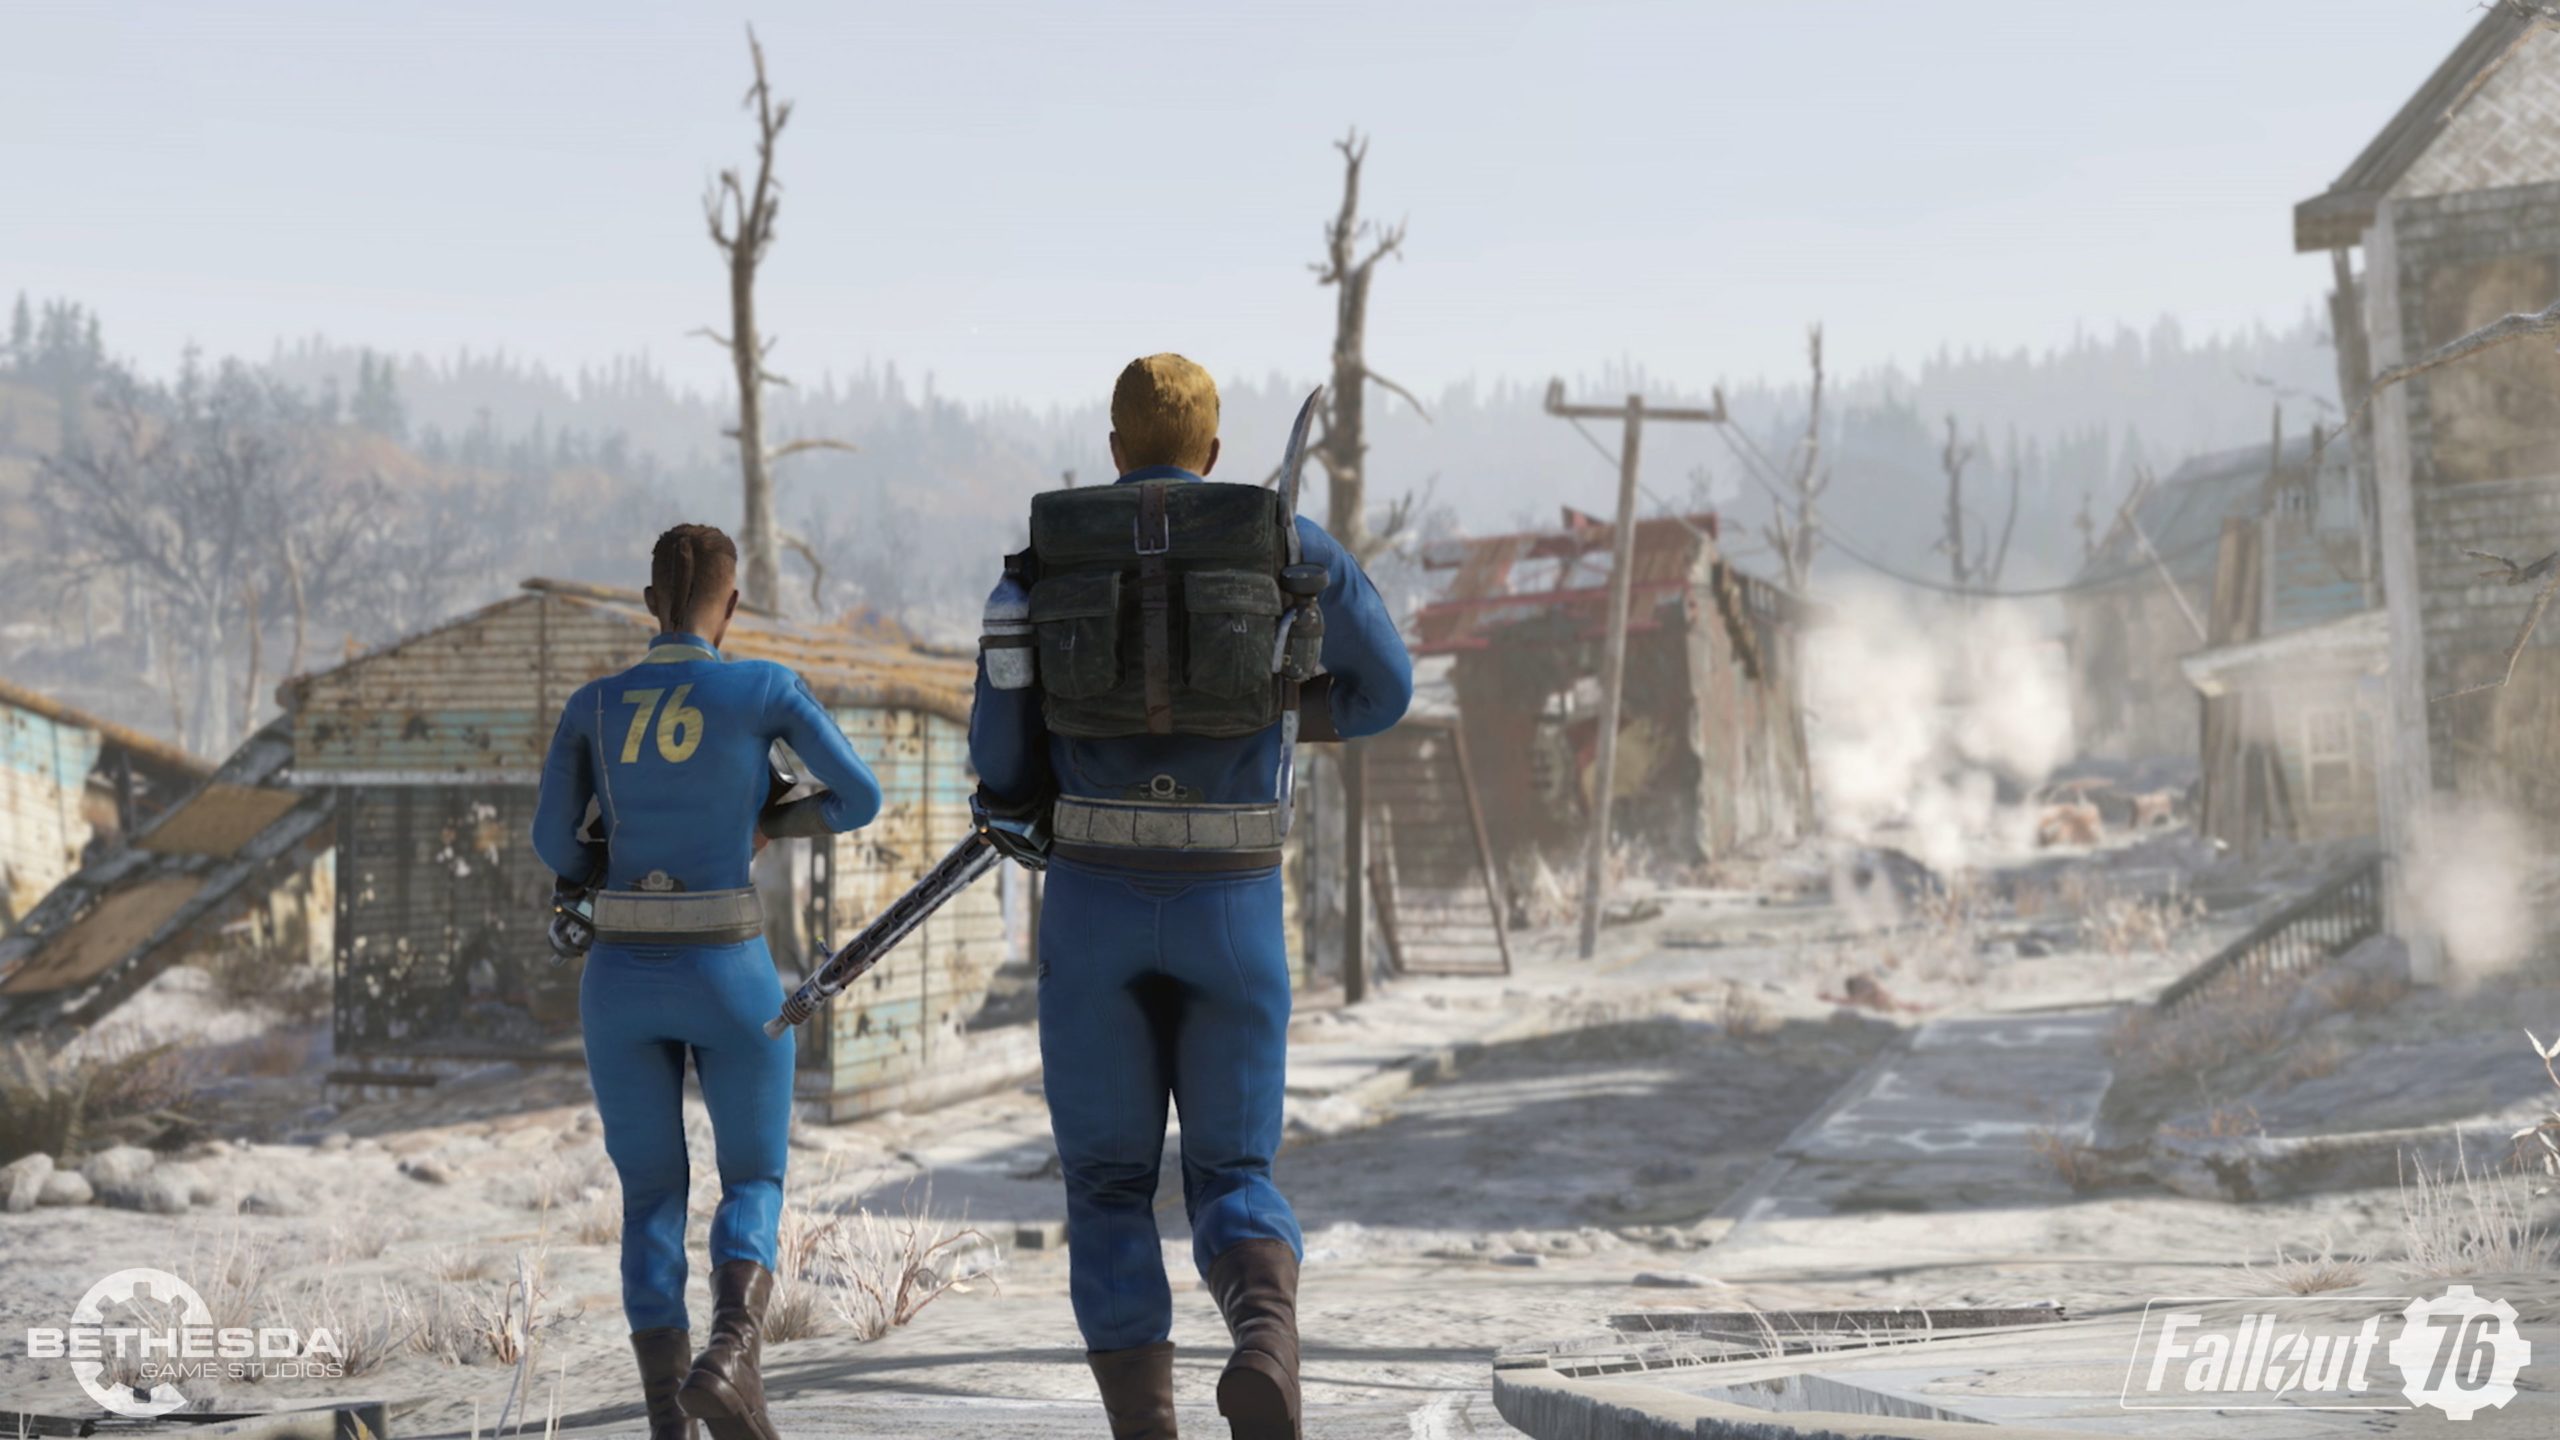 #Fallout 5 soll nach Elder Scrolls VI entwickelt werden, sagt Todd Howard